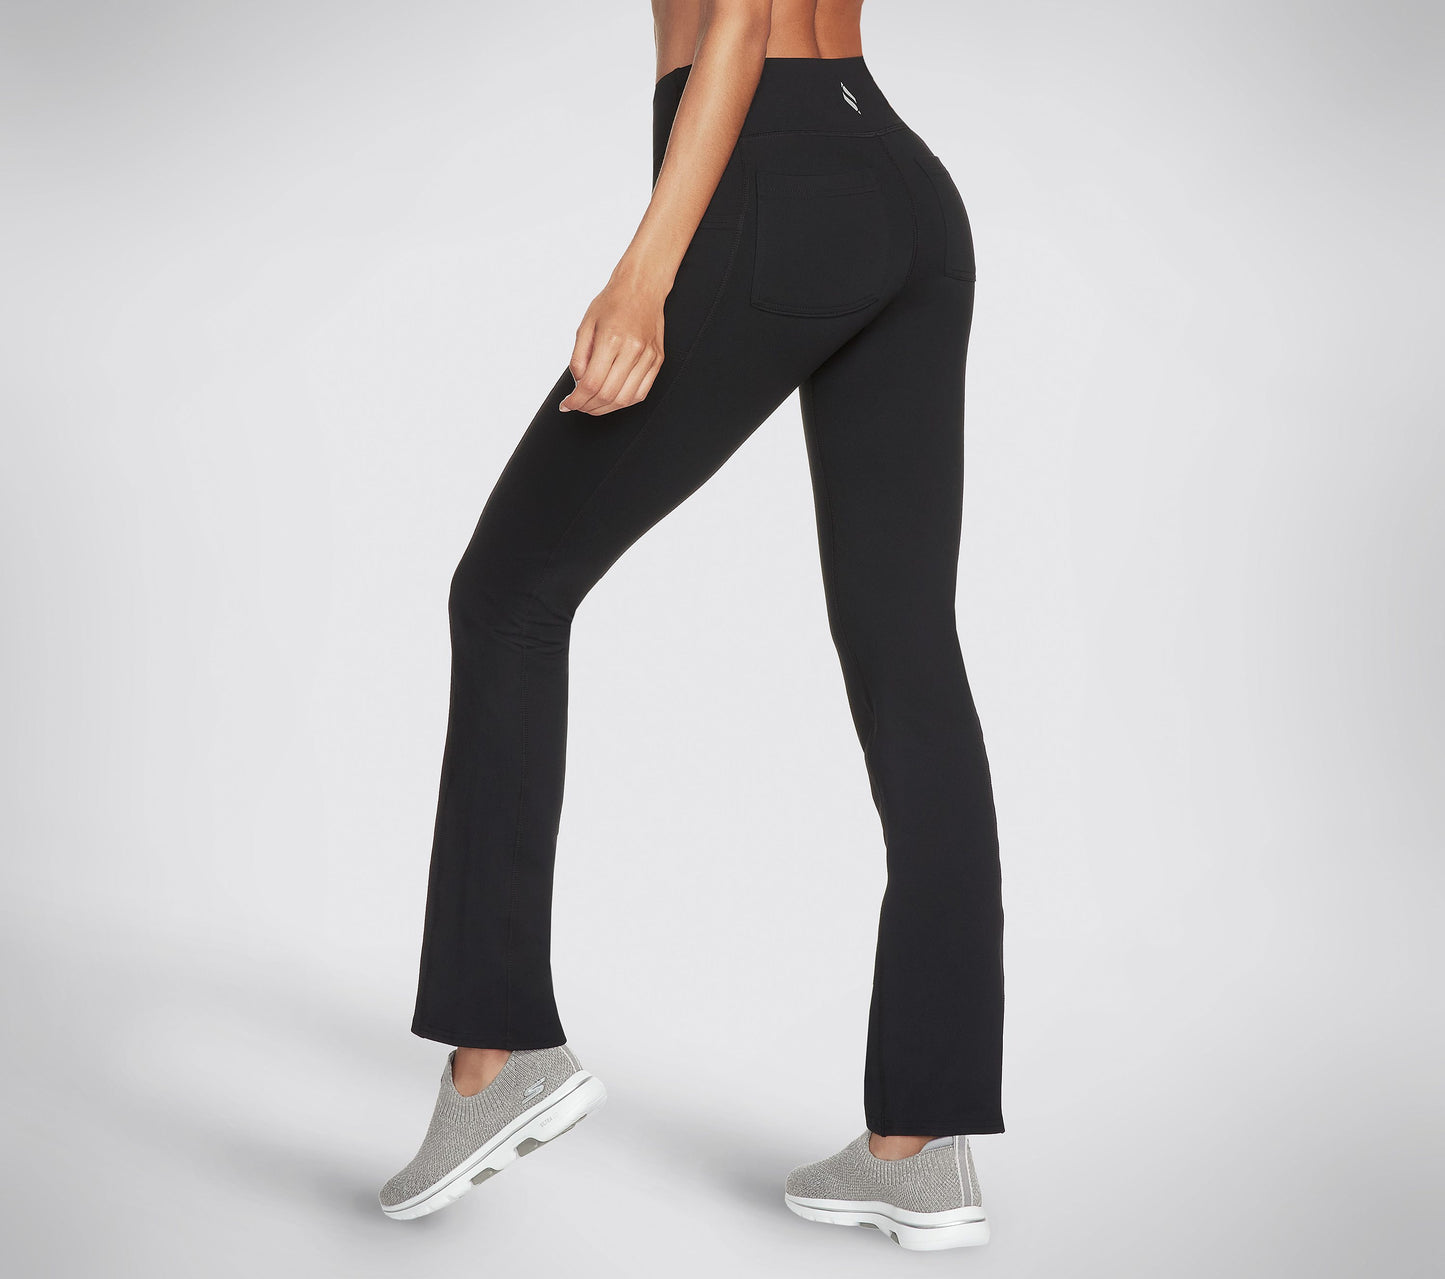 Skechers Women's Pants (Multiple Sizes)